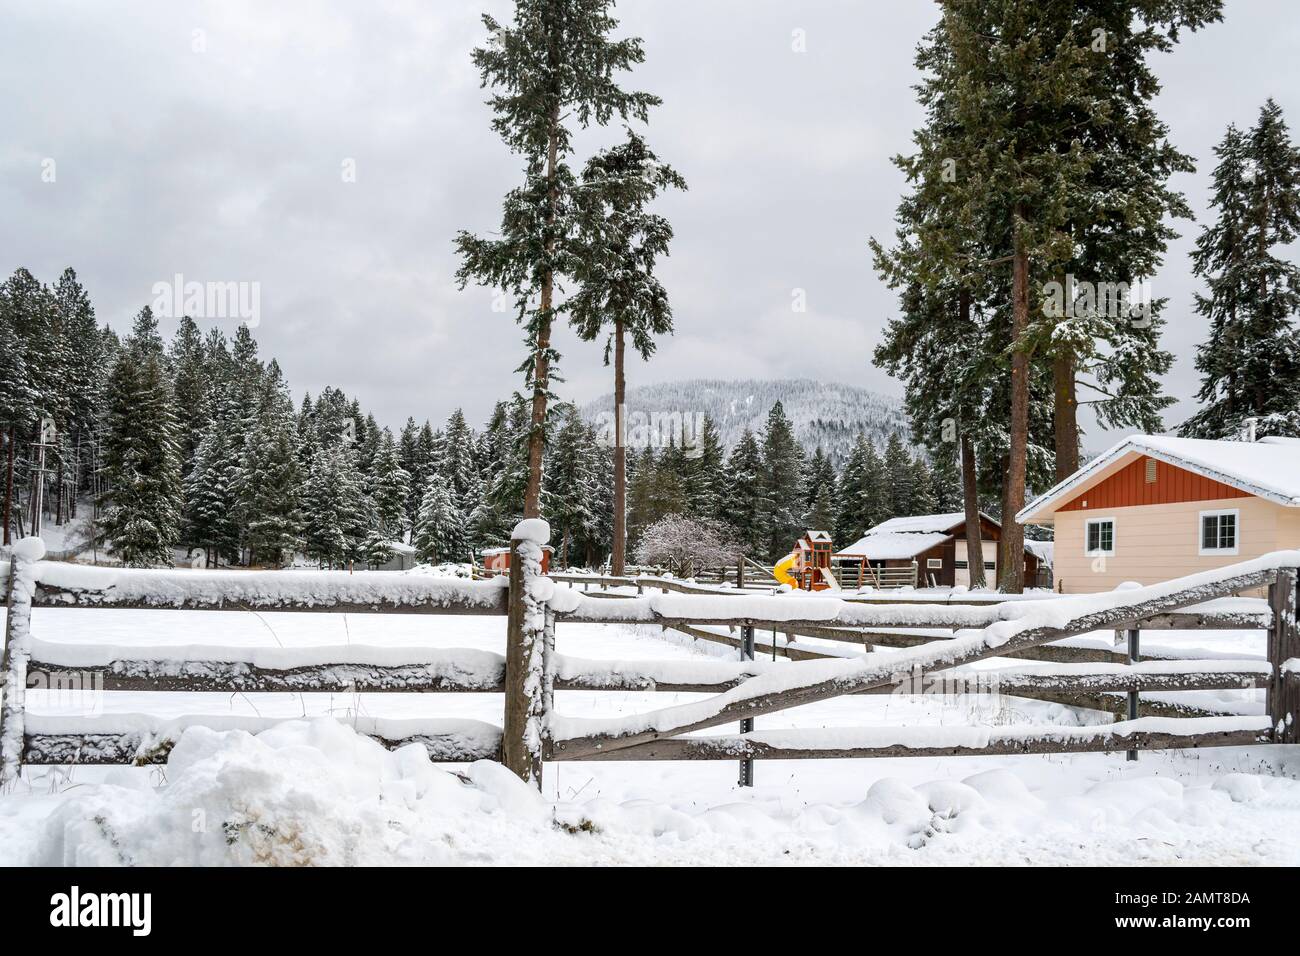 Una escena invernal de una casa de campo y un granero cubiertos de nieve en las montañas del norte de Idaho, EE.UU Foto de stock